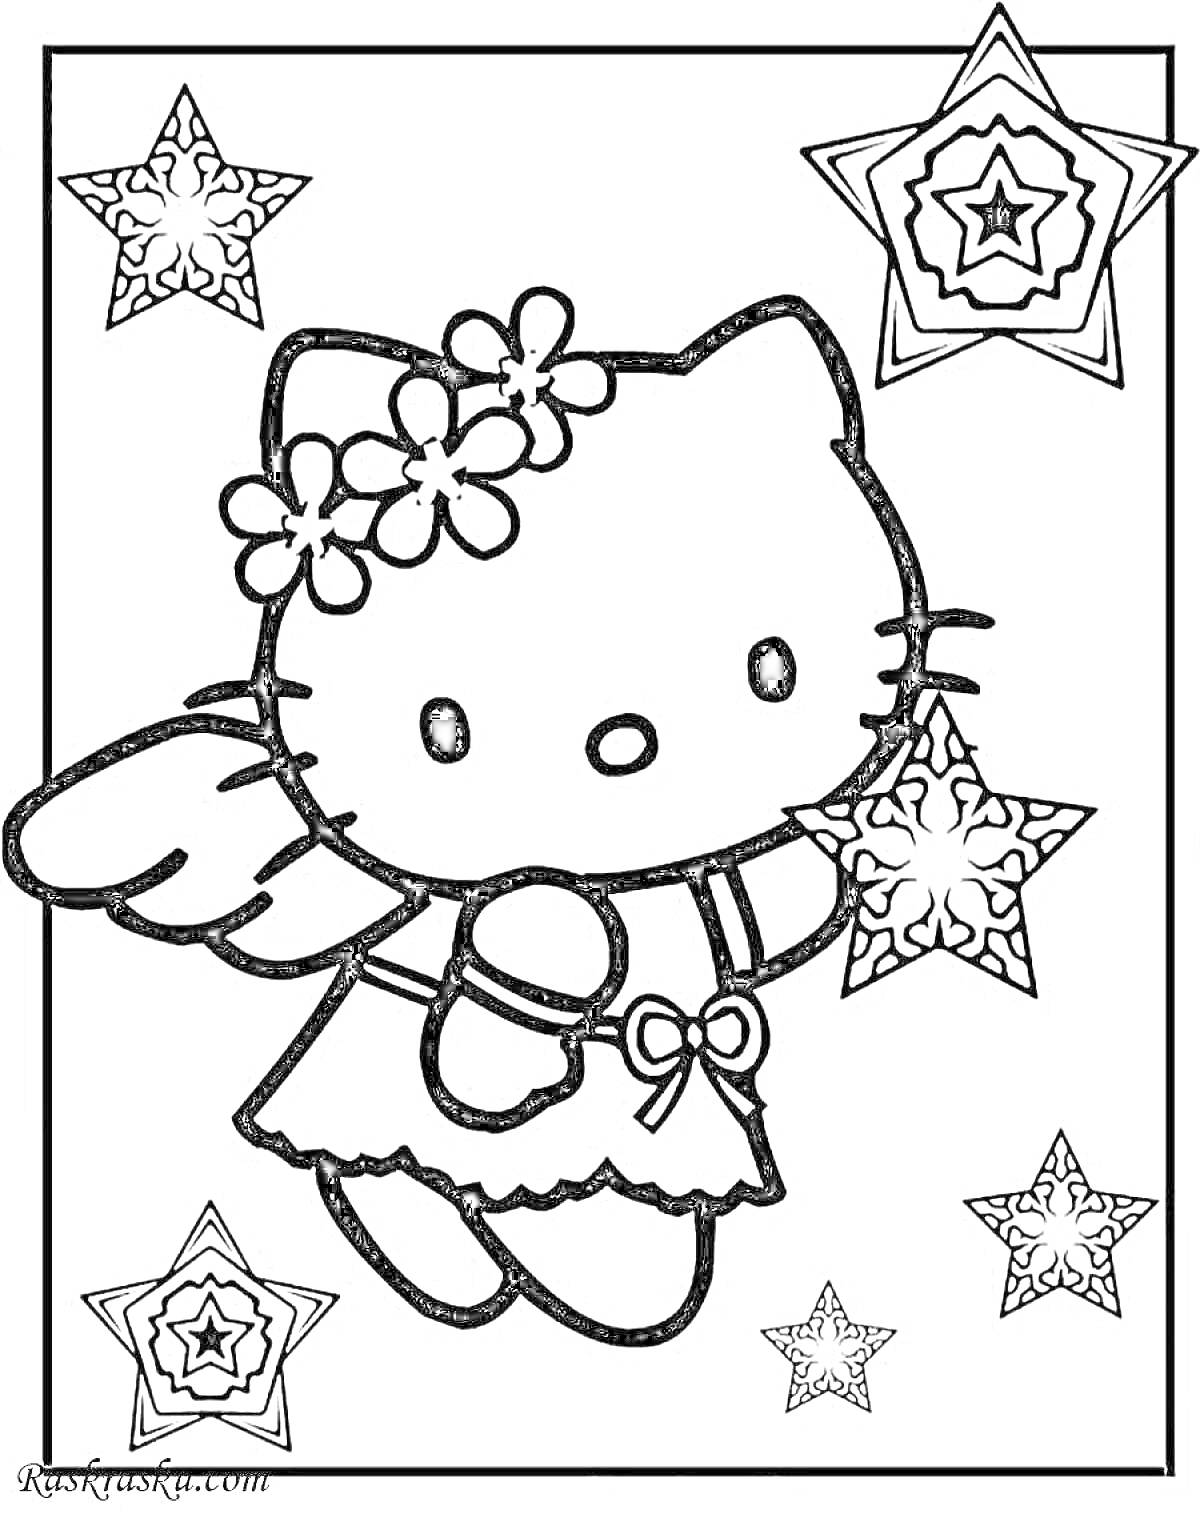 Раскраска Китти кошка с цветочками на голове, в платье с бантиком и крыльями, на фоне пятиконечных звезд